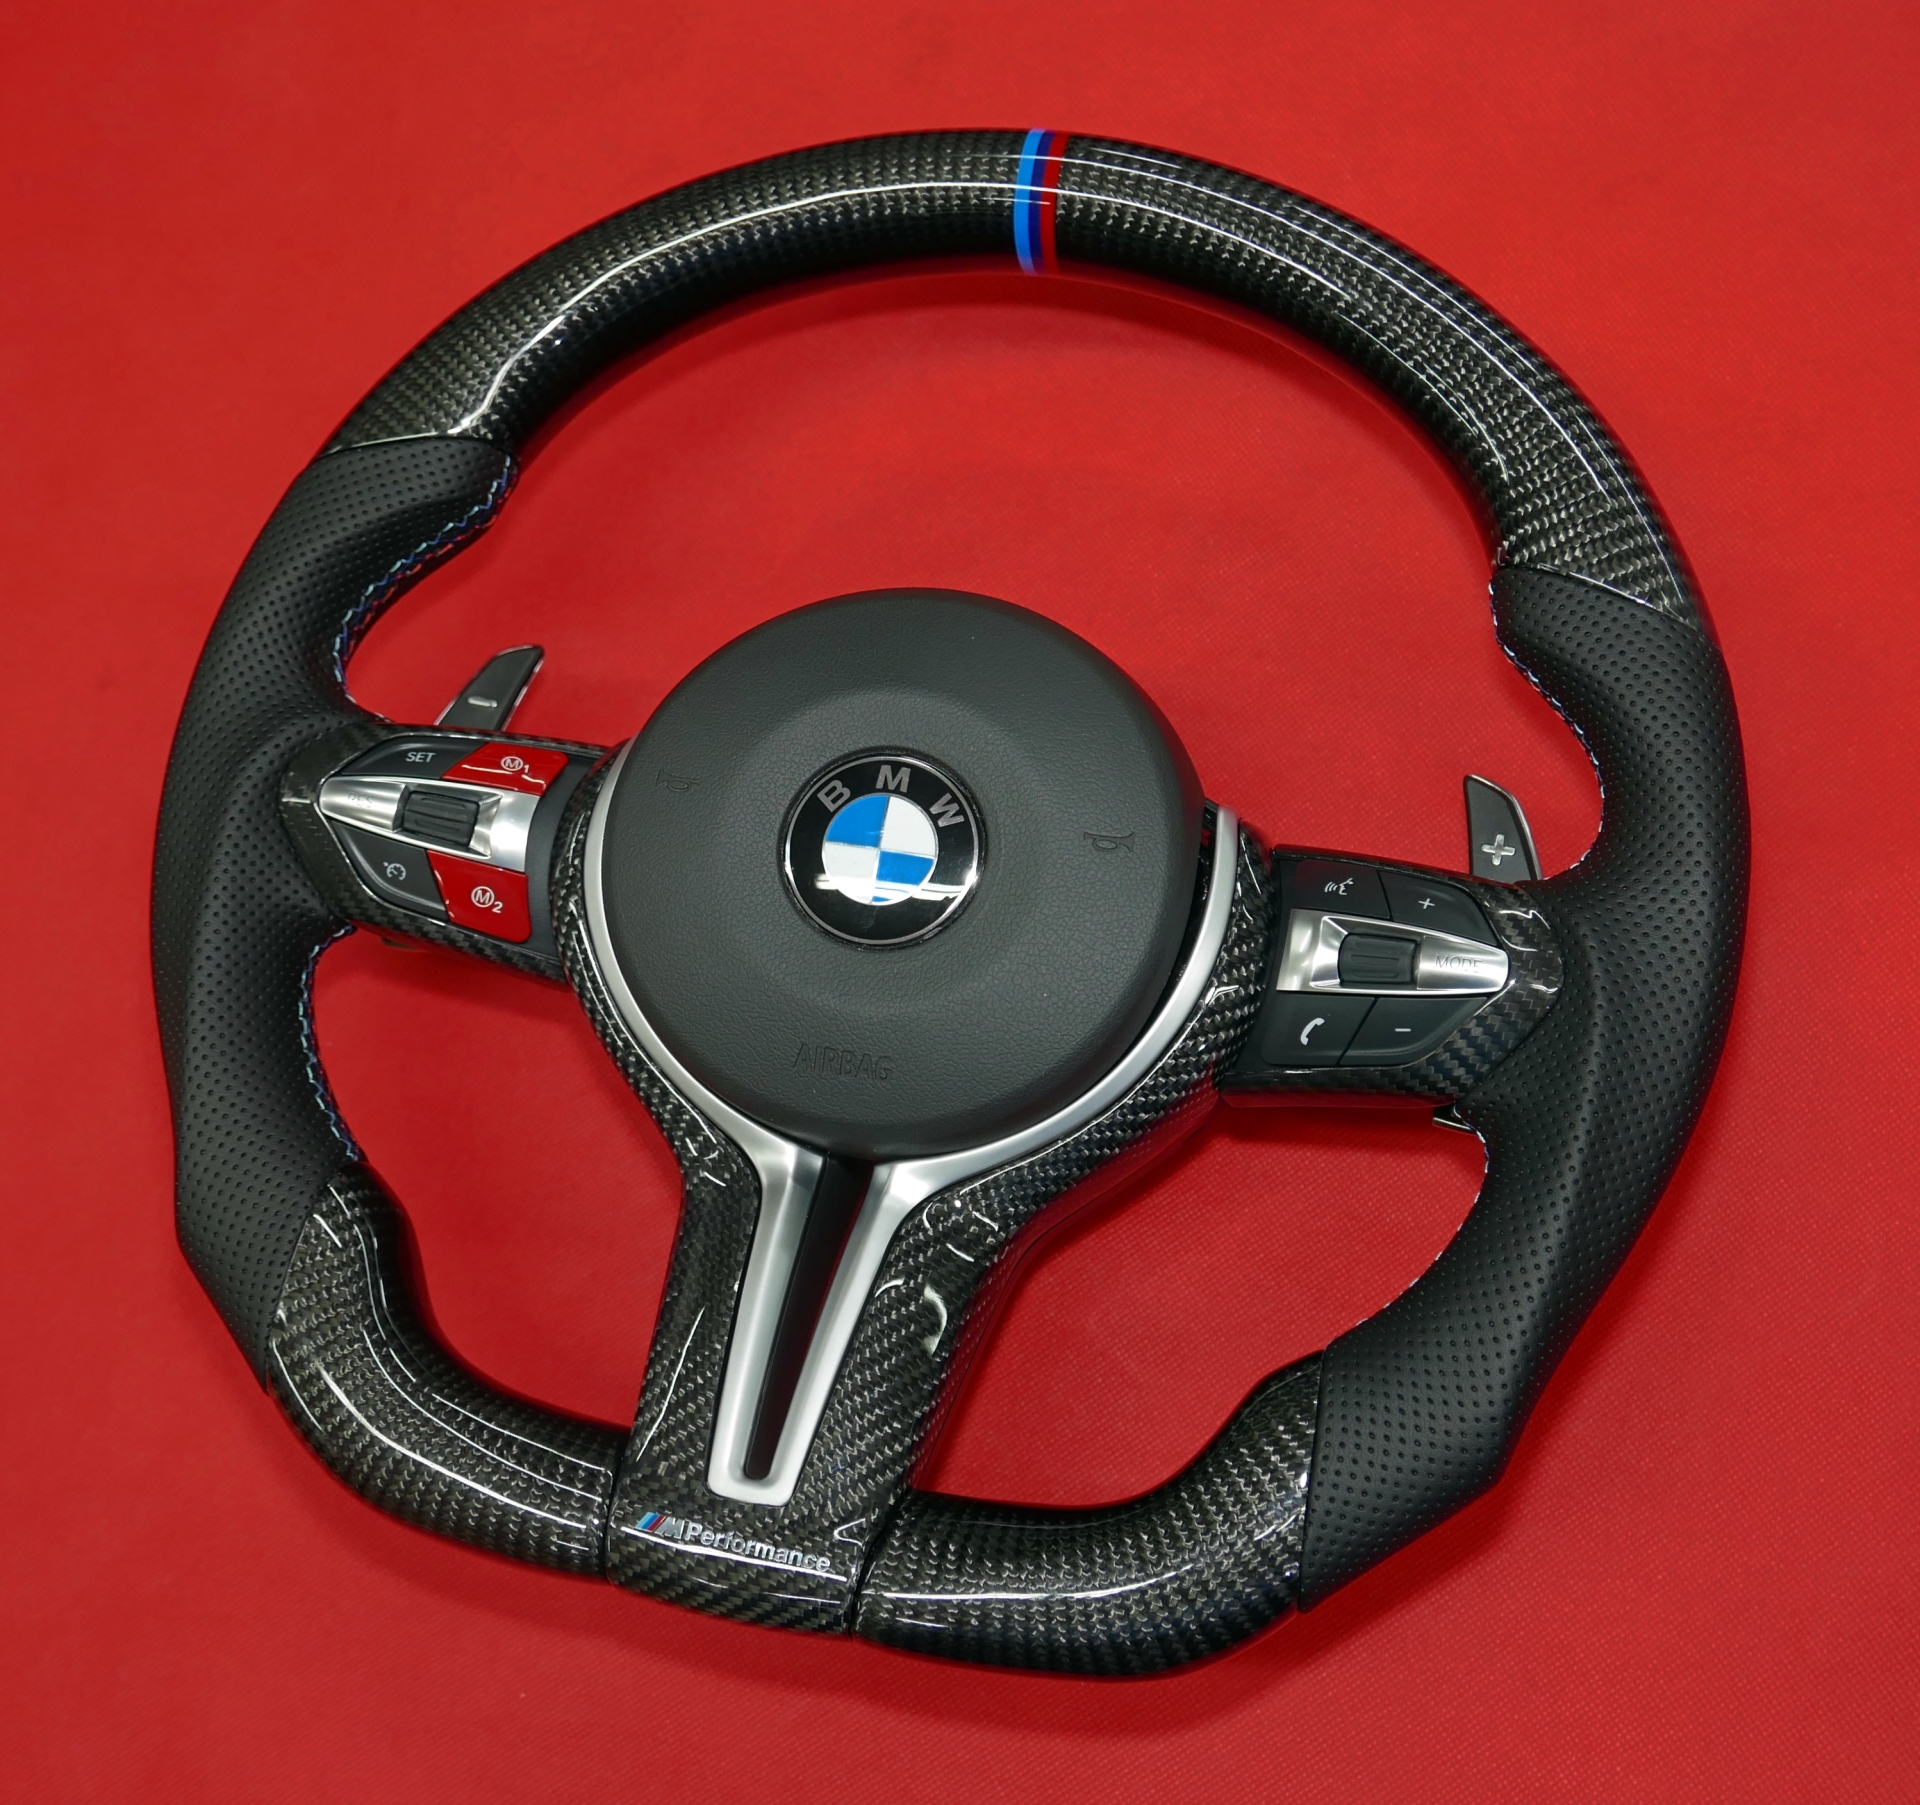 Kierownica BMW XM5 XM6 włókno węglowe carbon